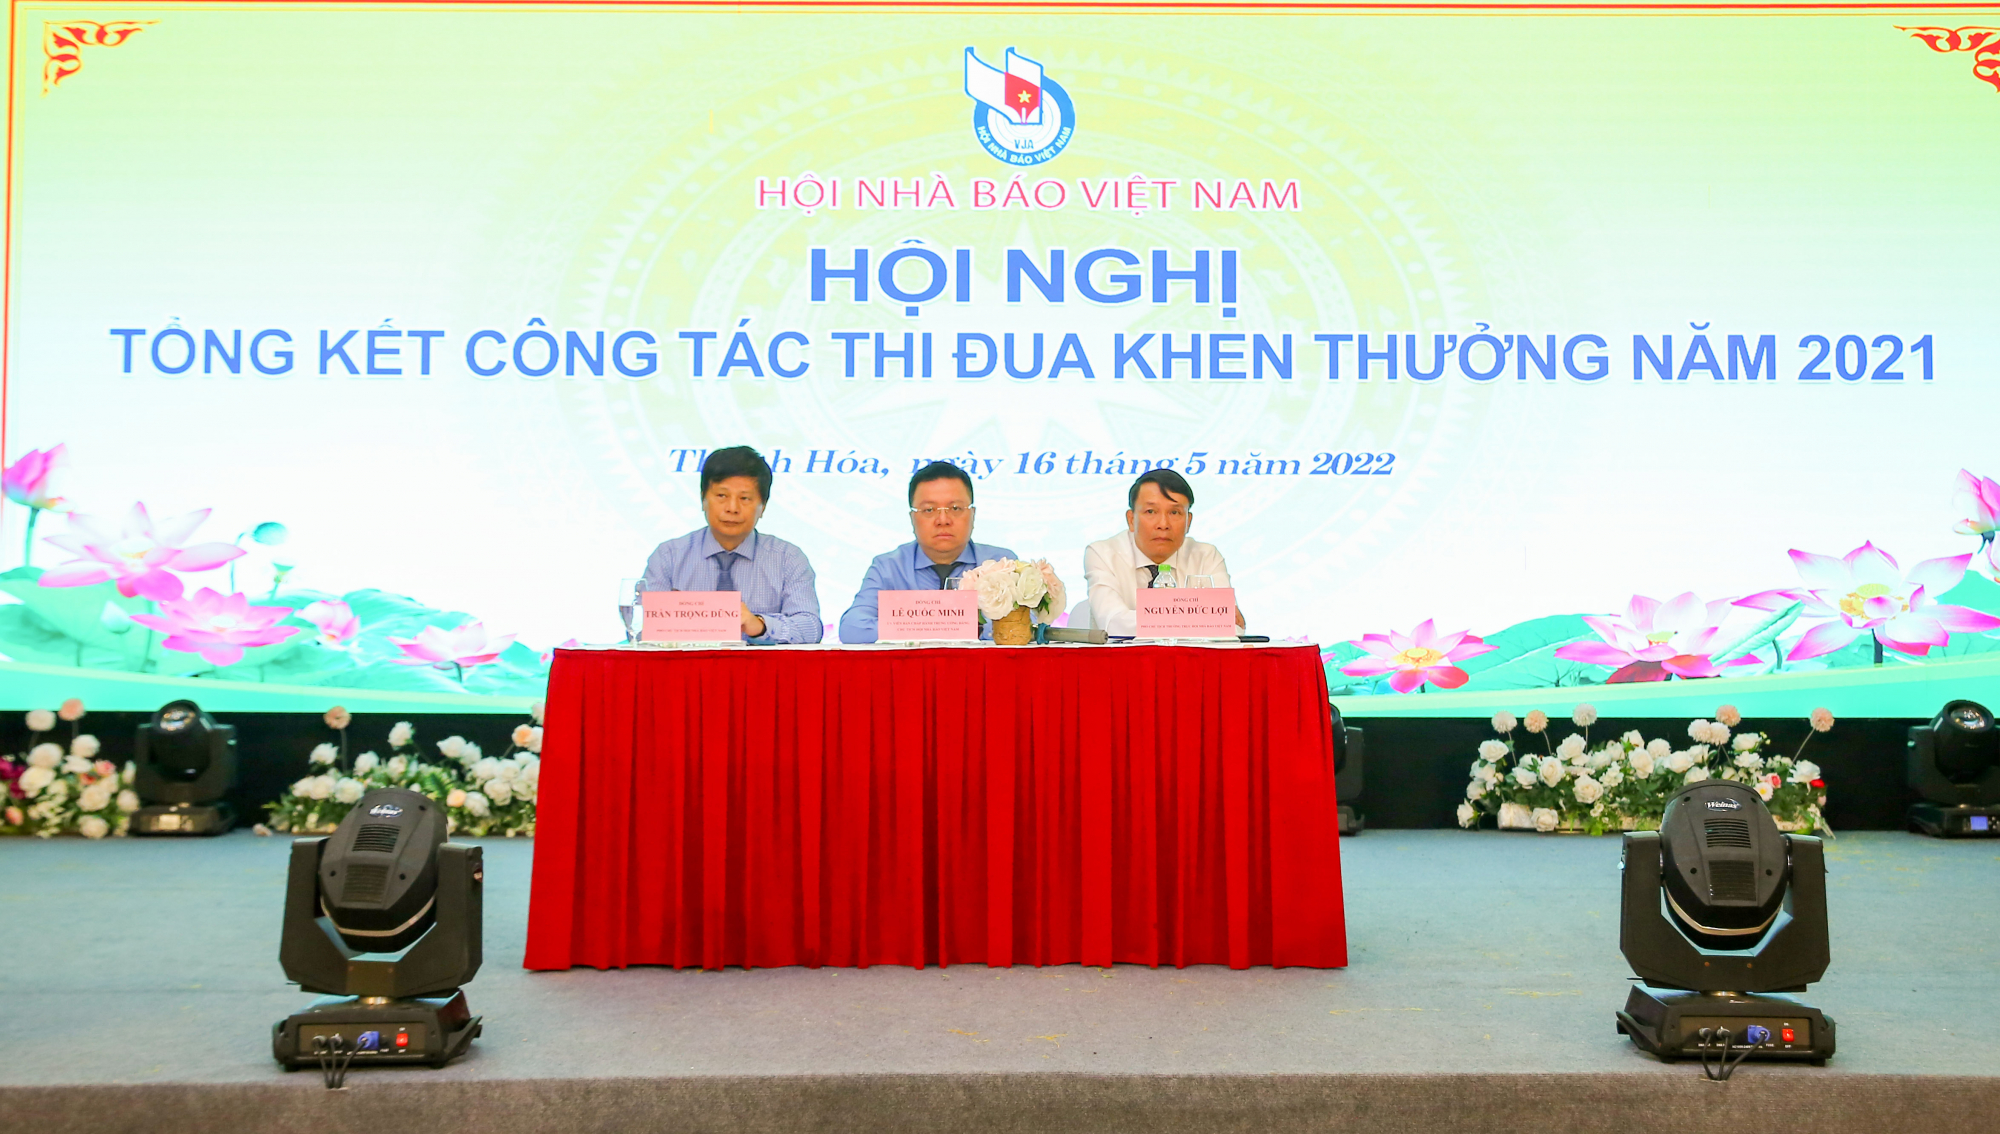 Hội nhà báo Việt Nam: Tiếp tục khẳng định bản lĩnh, trí tuệ và trách nhiệm của hội viên - Ảnh 1.